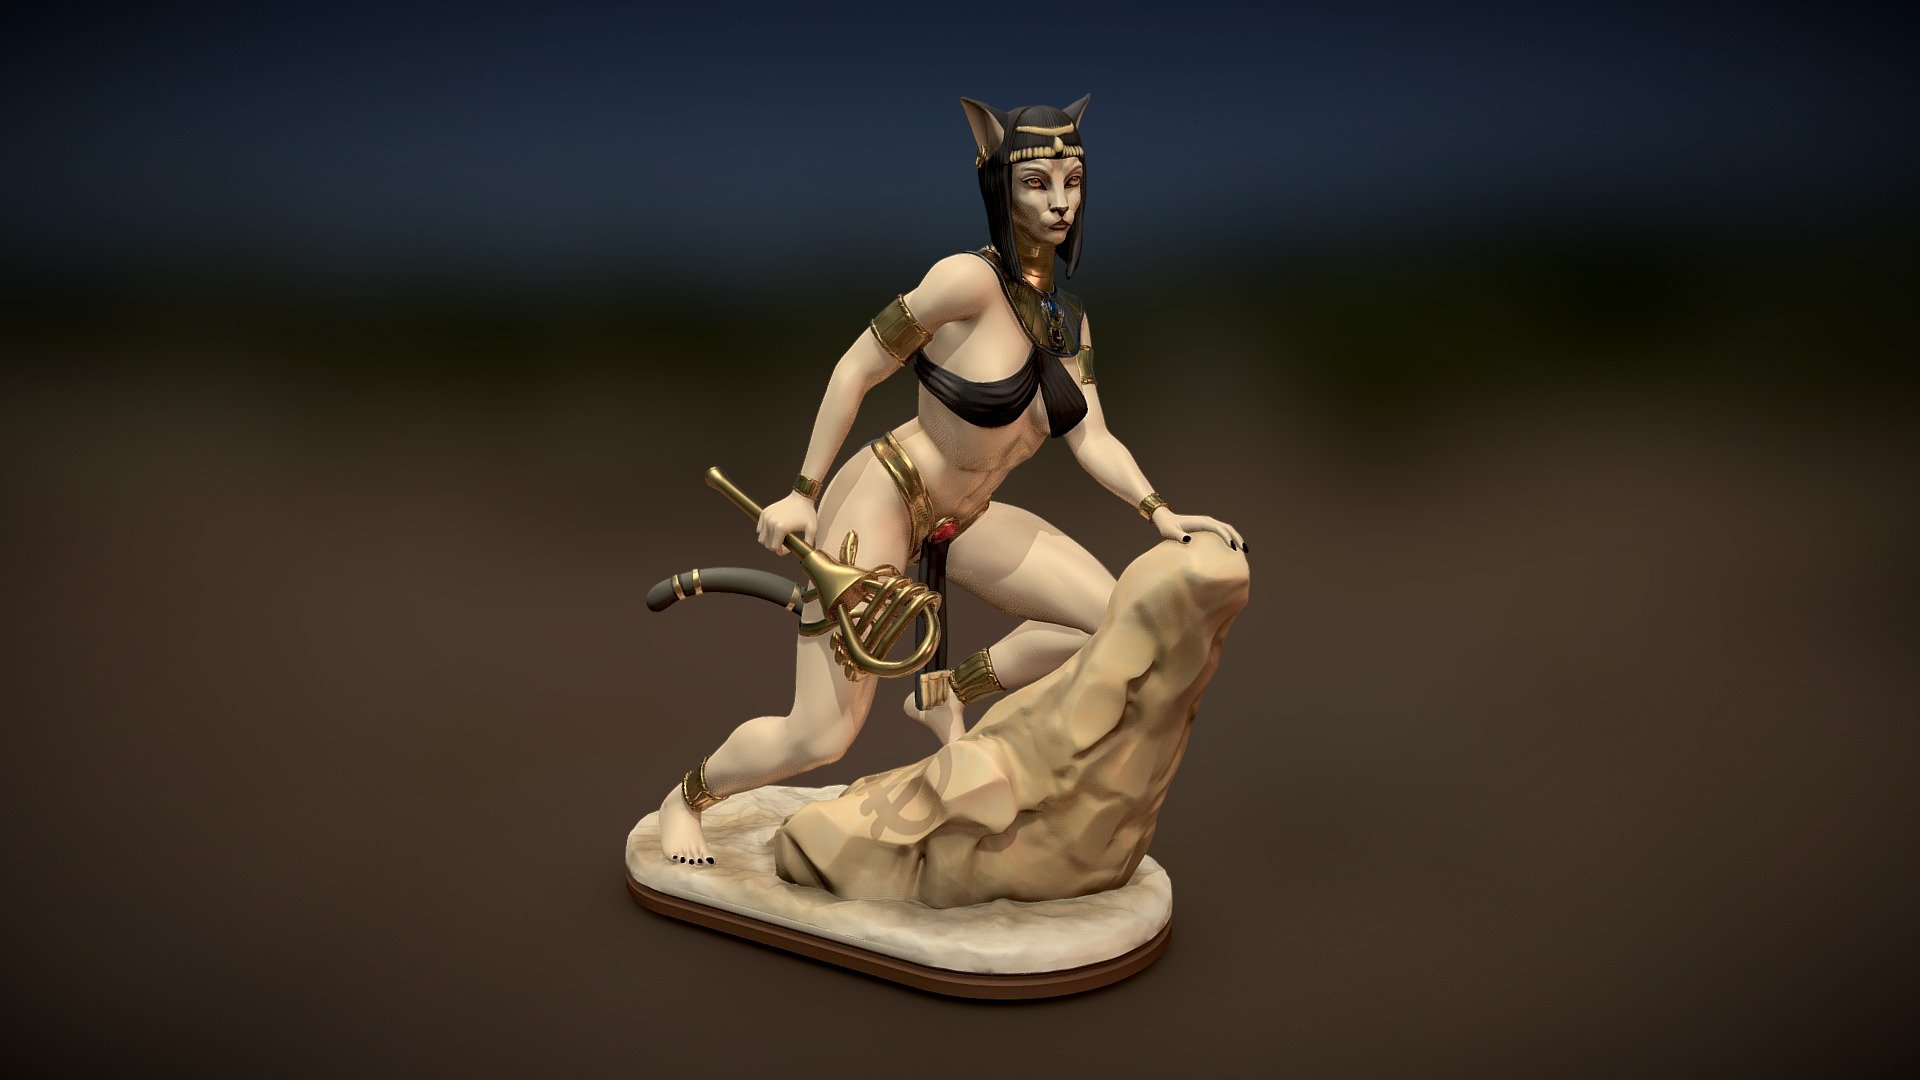 Egyptian Goddess Bastet statue for 3D print - Bastet Goddess Egyptian - 3D model by abauerenator 3d model